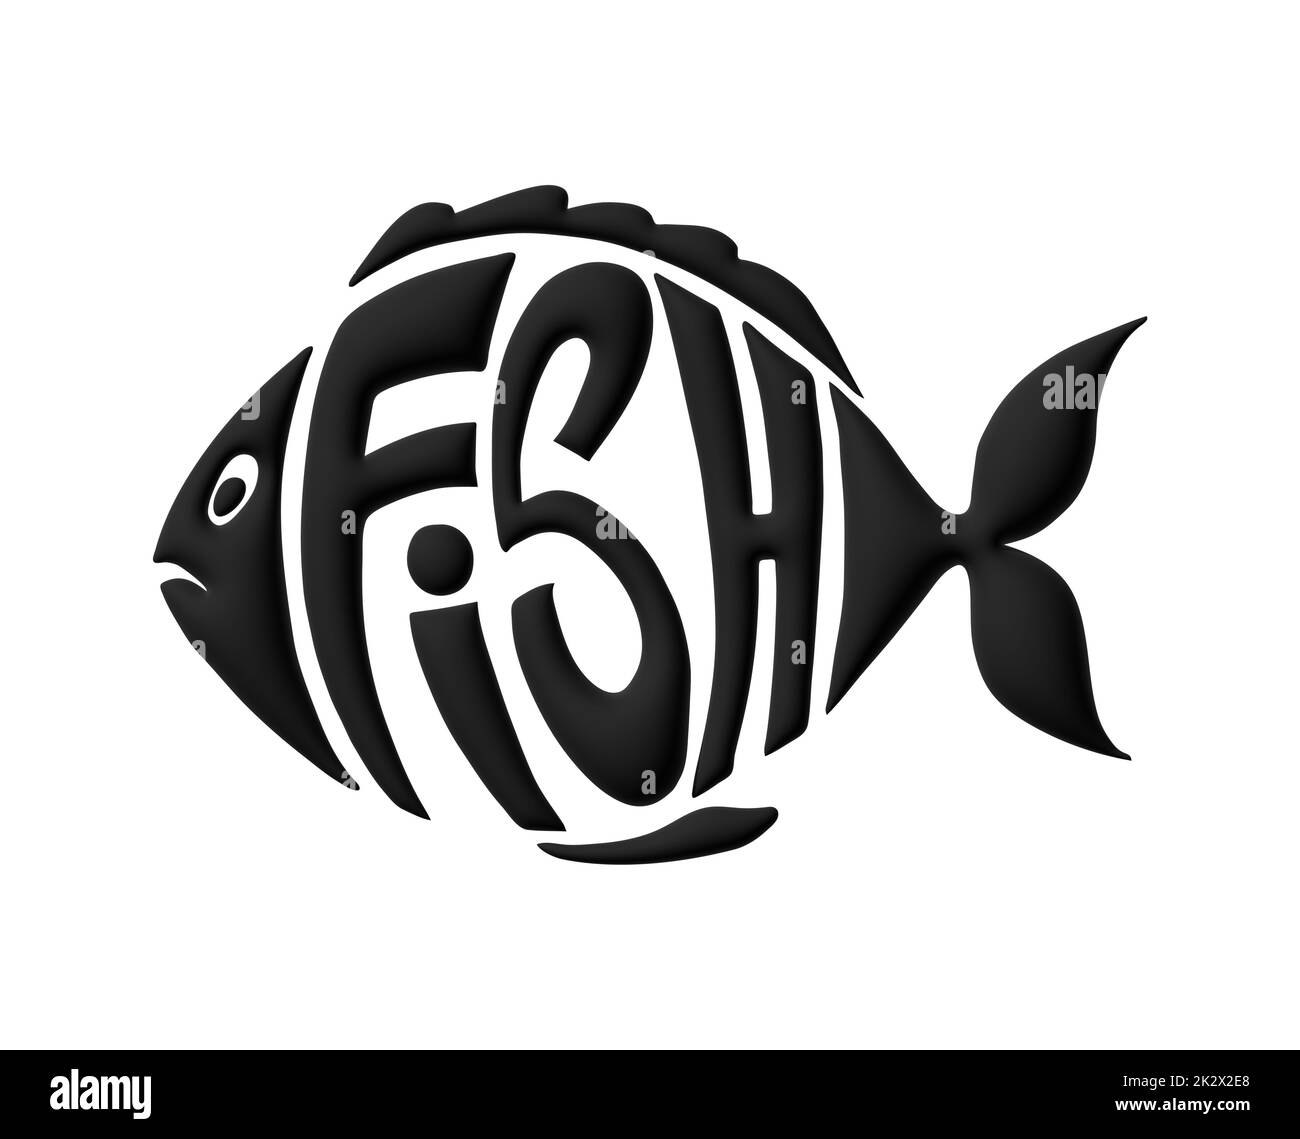 Testo stilizzato come pesce. Design elegante per un marchio, un'etichetta o una pubblicità Foto Stock